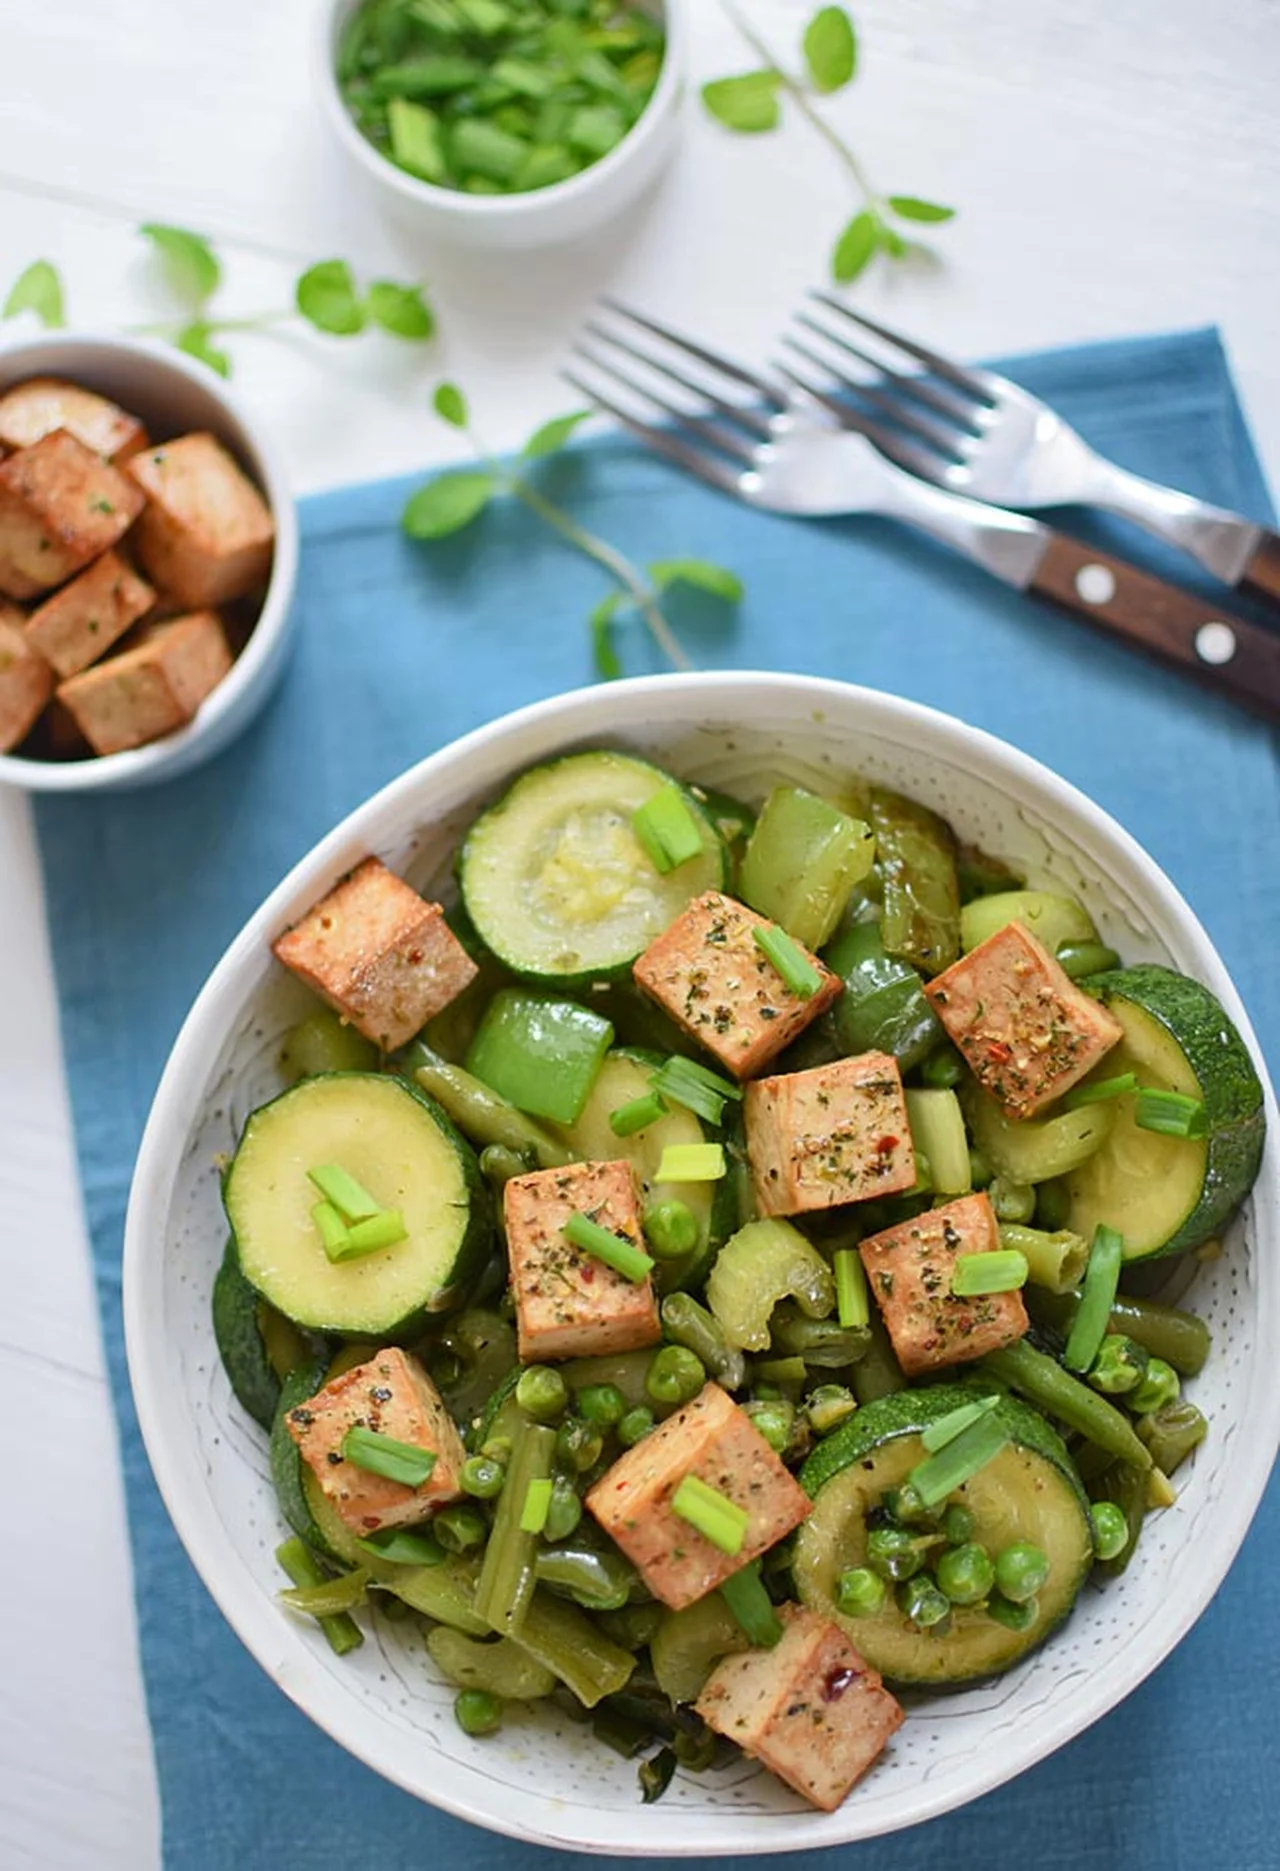 Zielone warzywa smażone z tofu